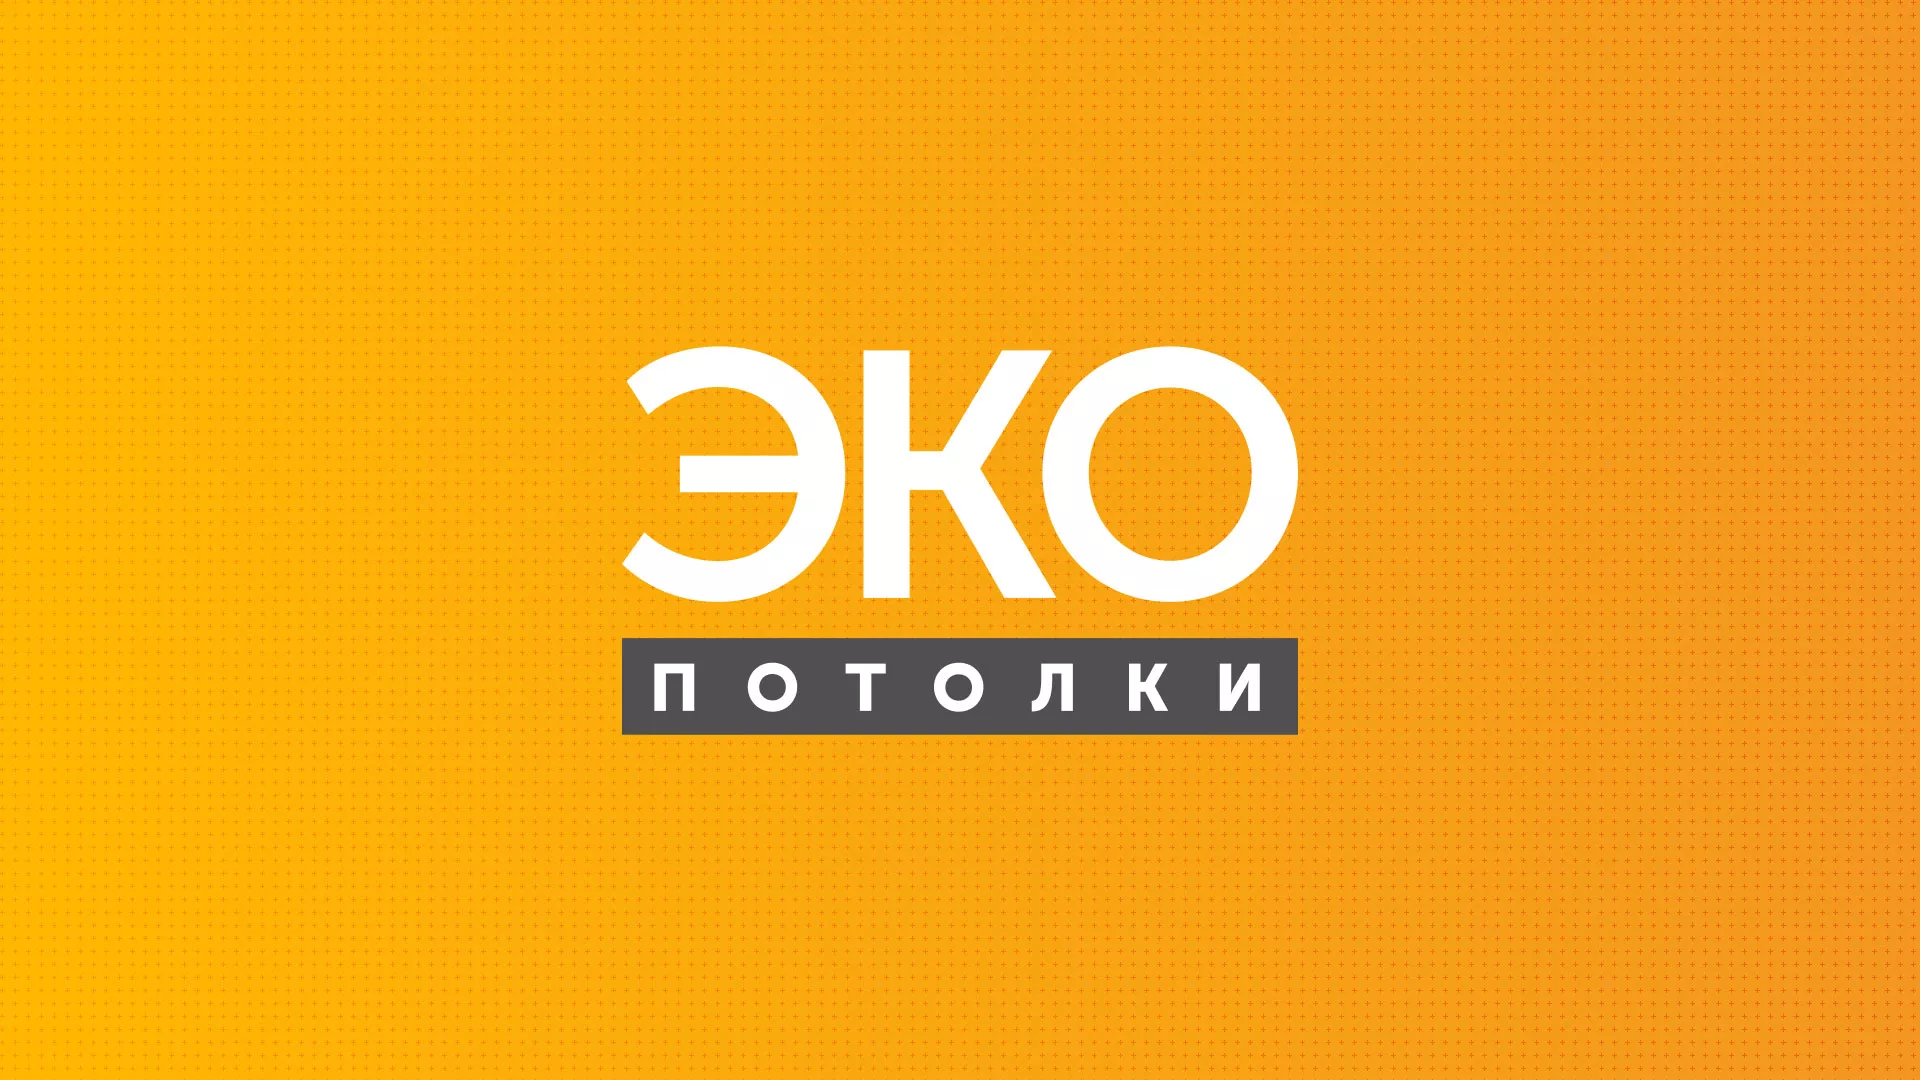 Разработка сайта по натяжным потолкам «Эко Потолки» в Касимове